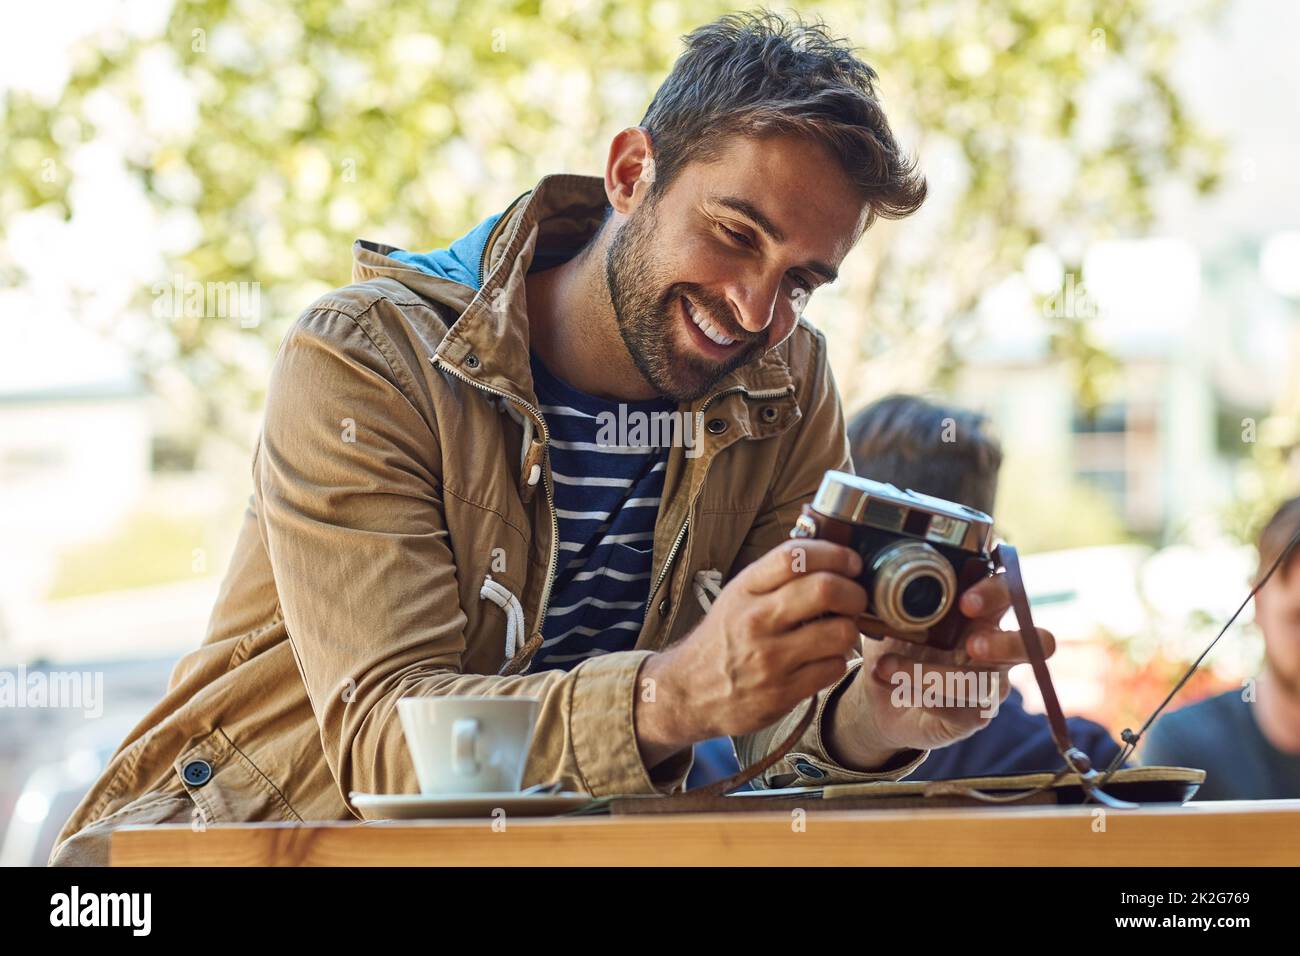 Ces clichés illustrent mon parcours. Photo d'un touriste heureux prenant une photo avec son appareil photo tout en se relaxant dans un café-terrasse. Banque D'Images